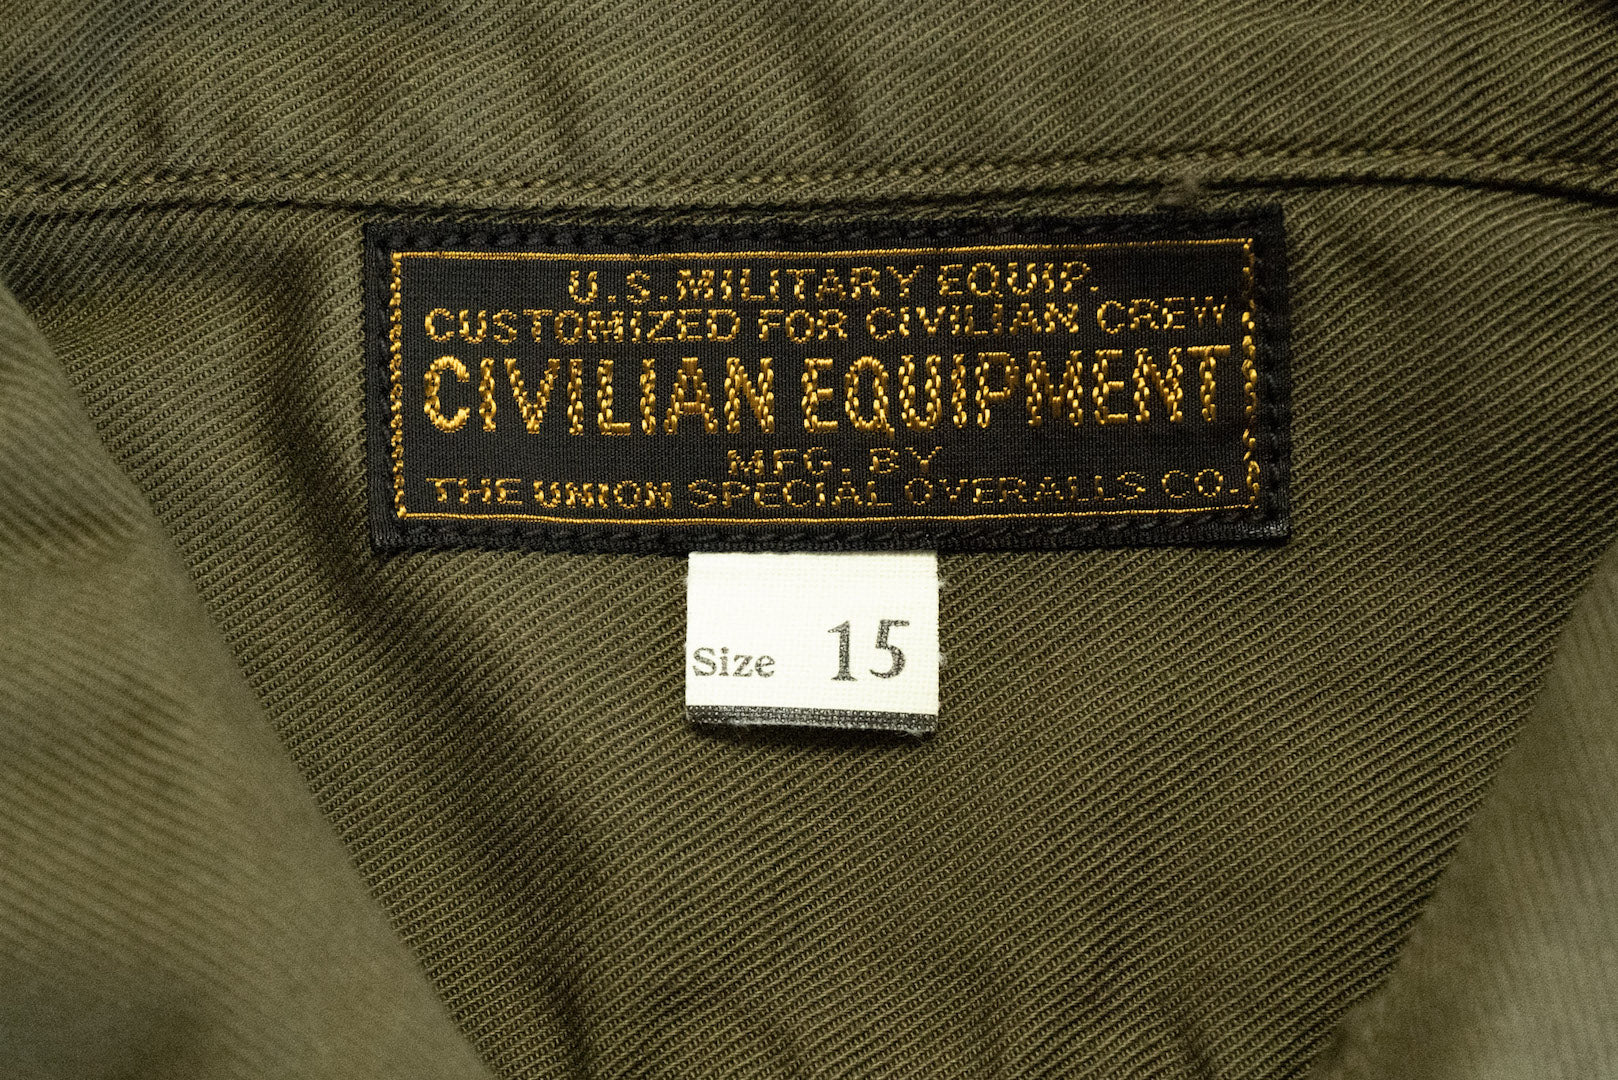 Freewheelers Military Utility Shirt (Olive)